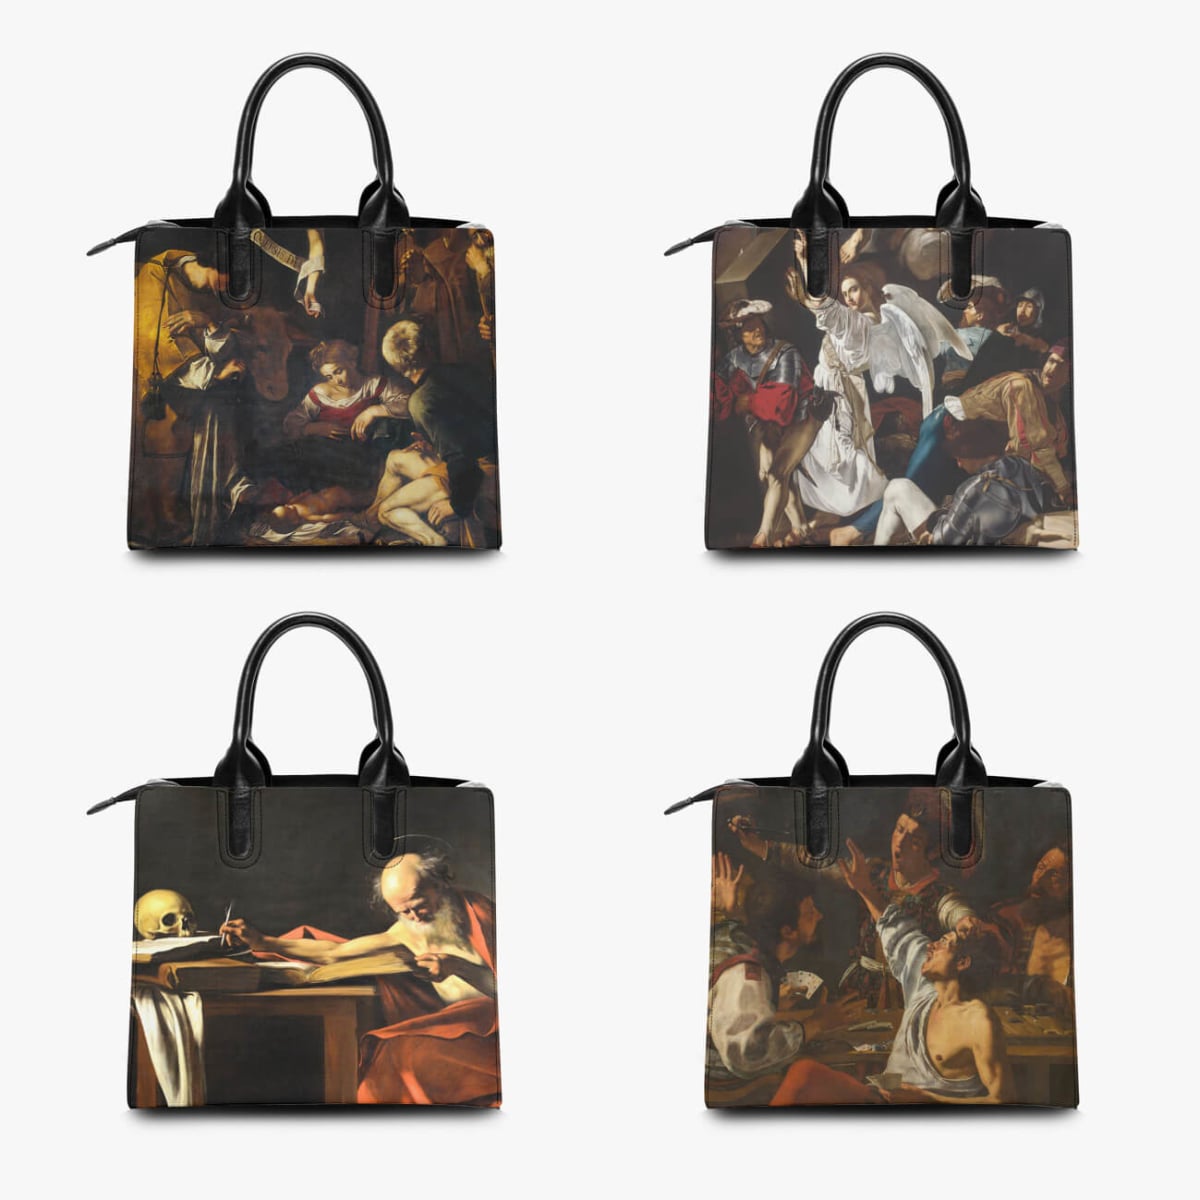 The Resurrection by Caravaggio Baroque Art Handbag